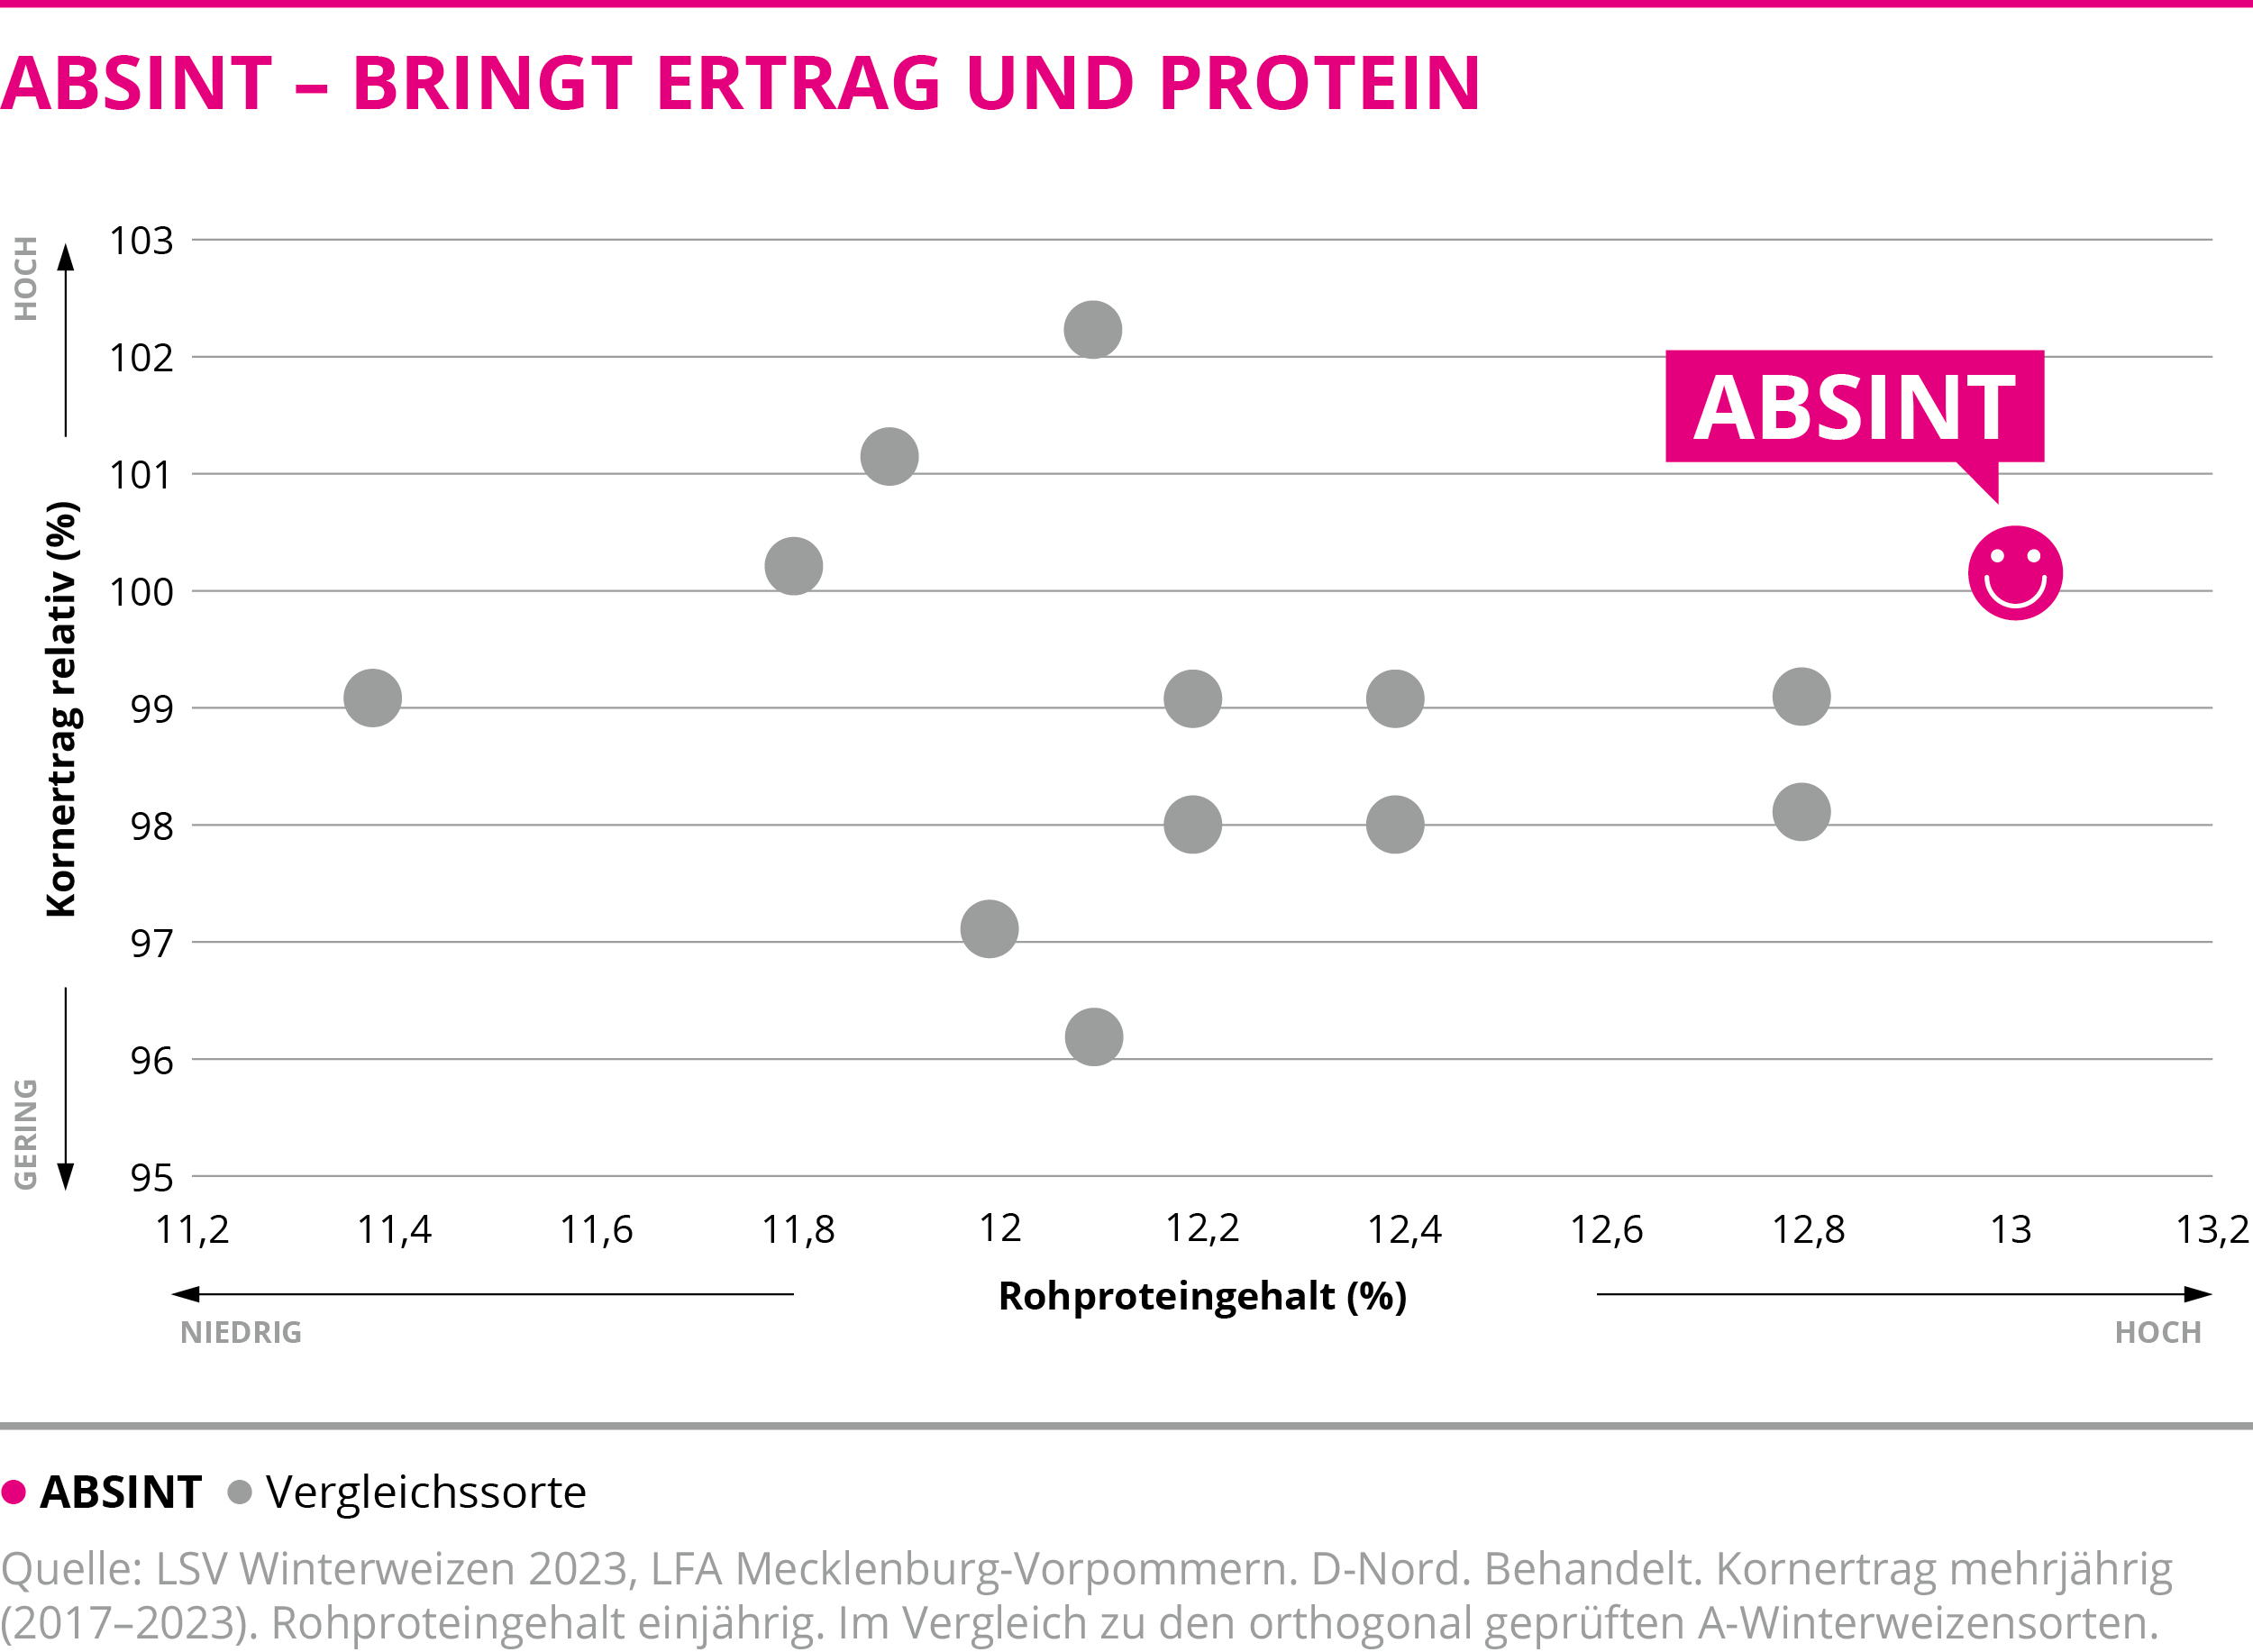 ABSINT - Bringt Ertrag und Protein